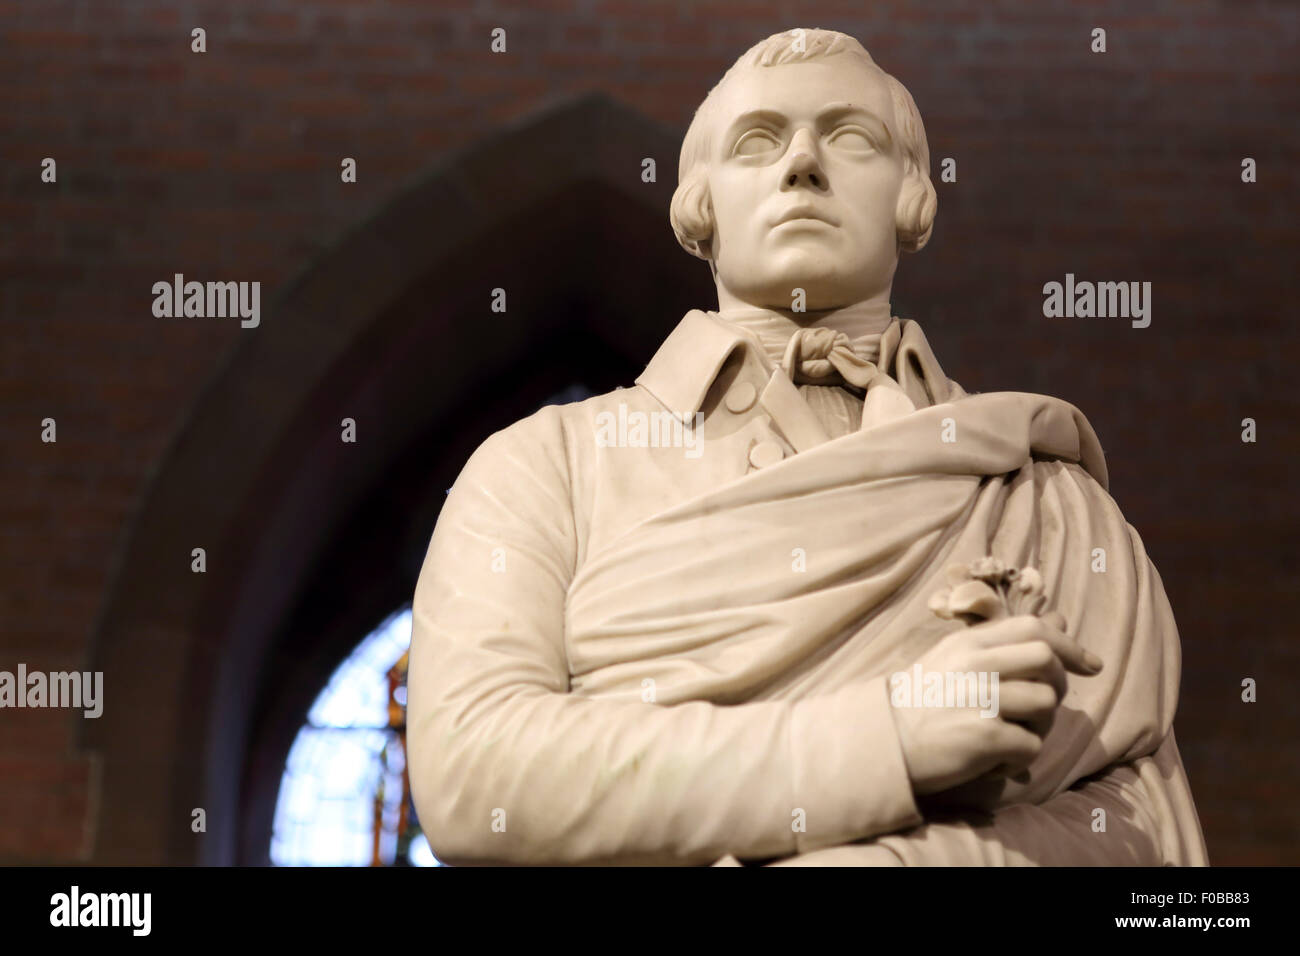 Statue von Robert Burns in Edinburgh, Schottland. Burns (1759-1796) gilt als Schottlands Nationaldichter. Stockfoto